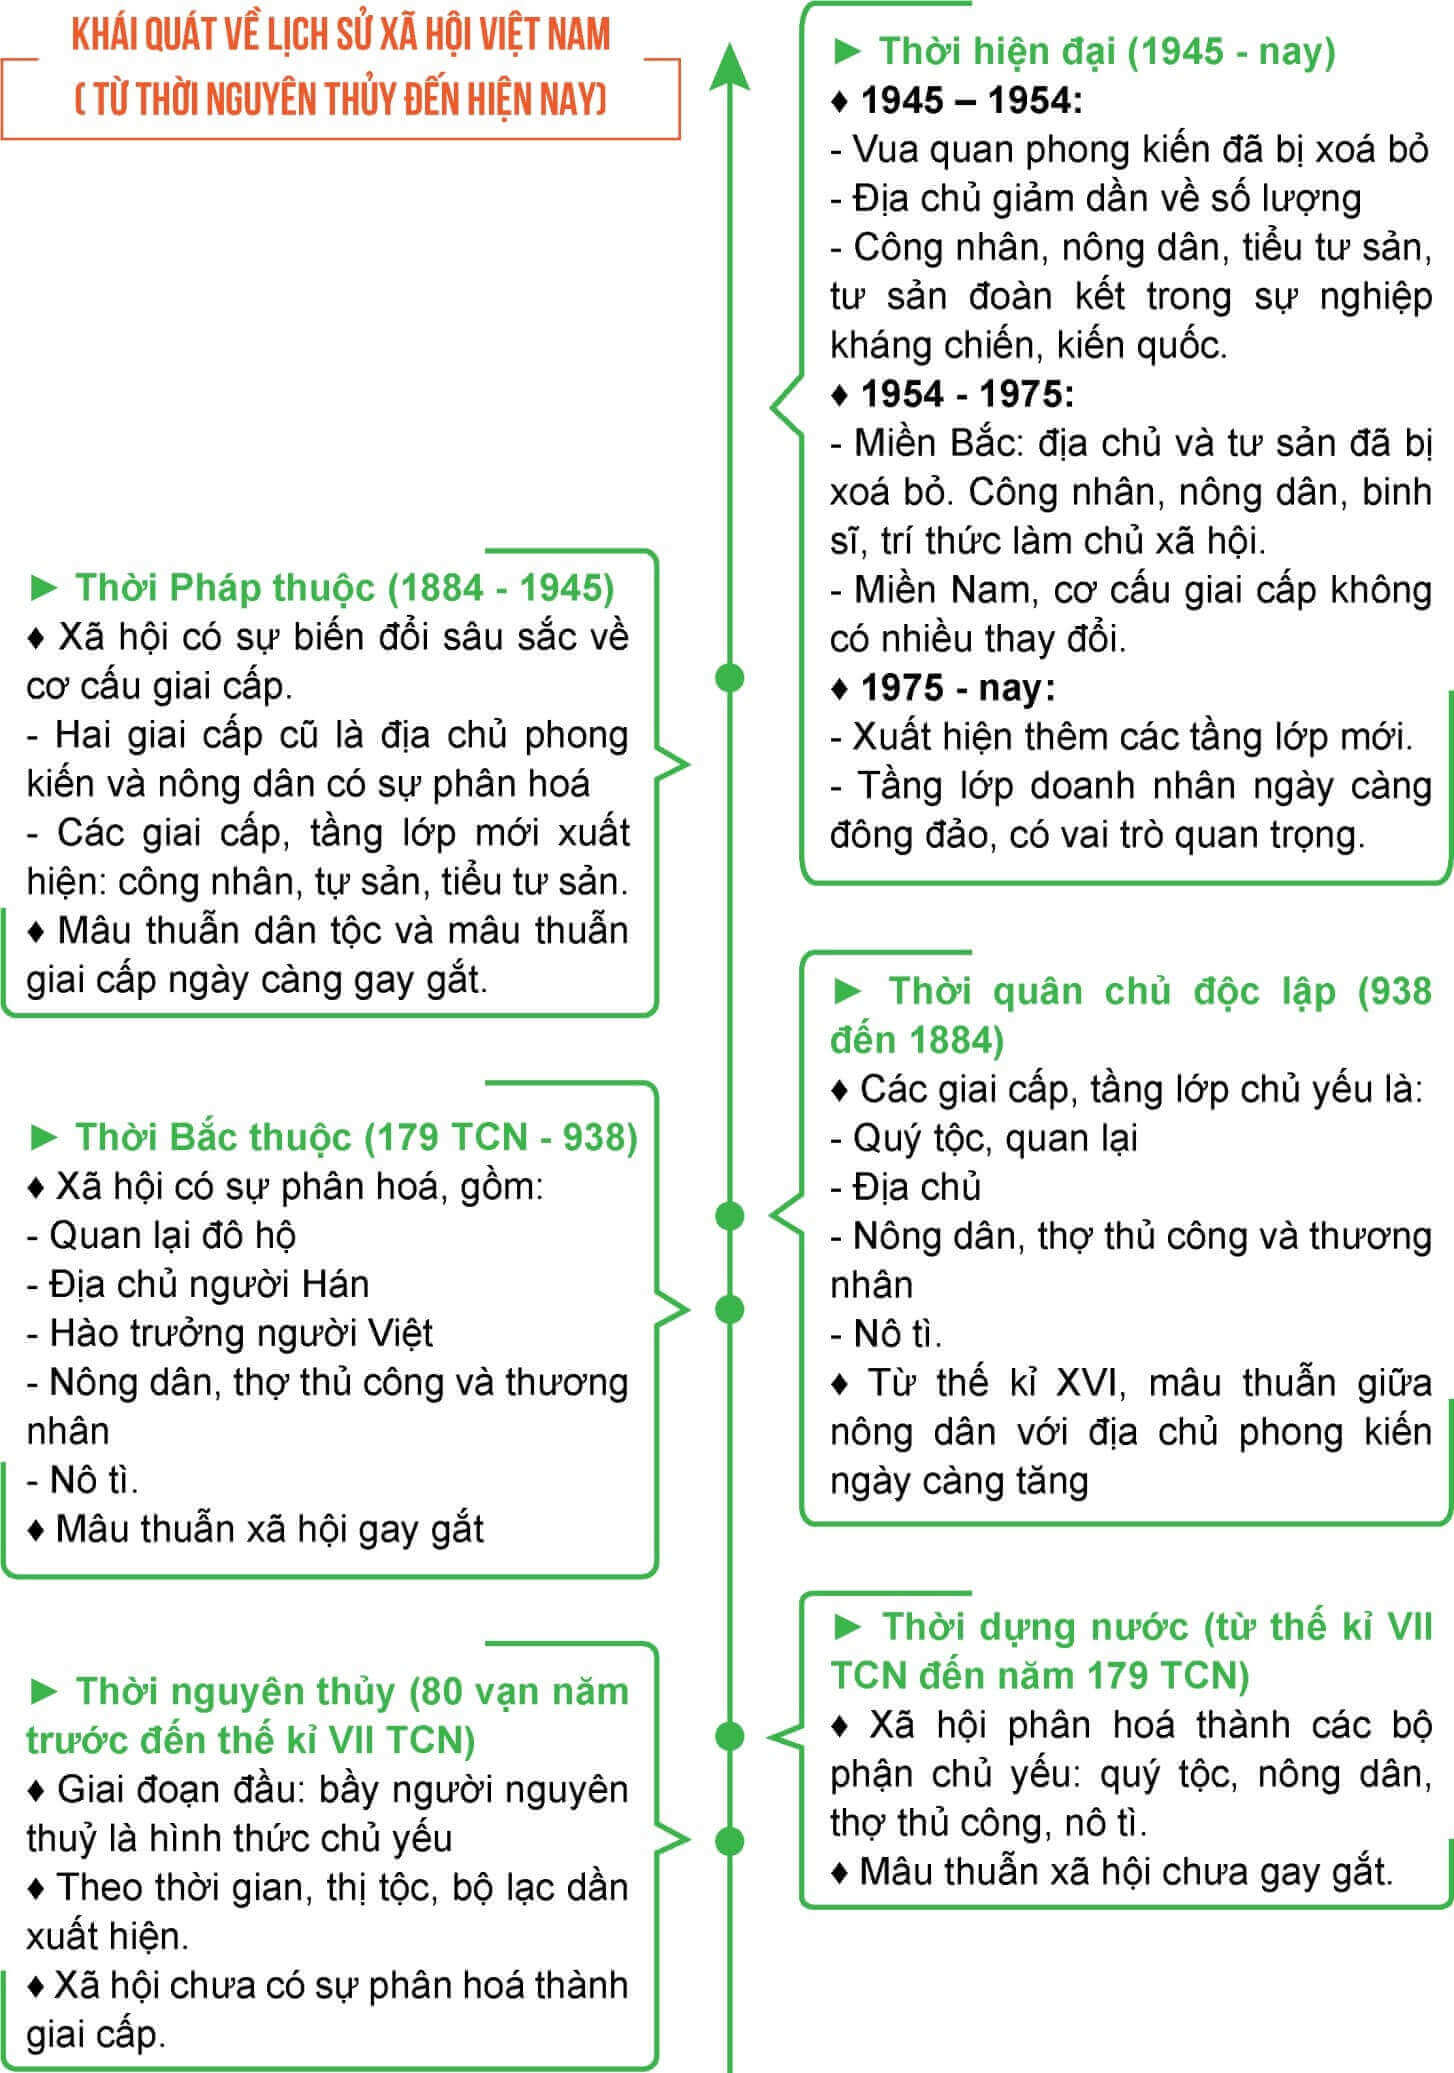 Tóm tắt những nét chính của lịch sử xã hội Việt Nam trên trục thời gian